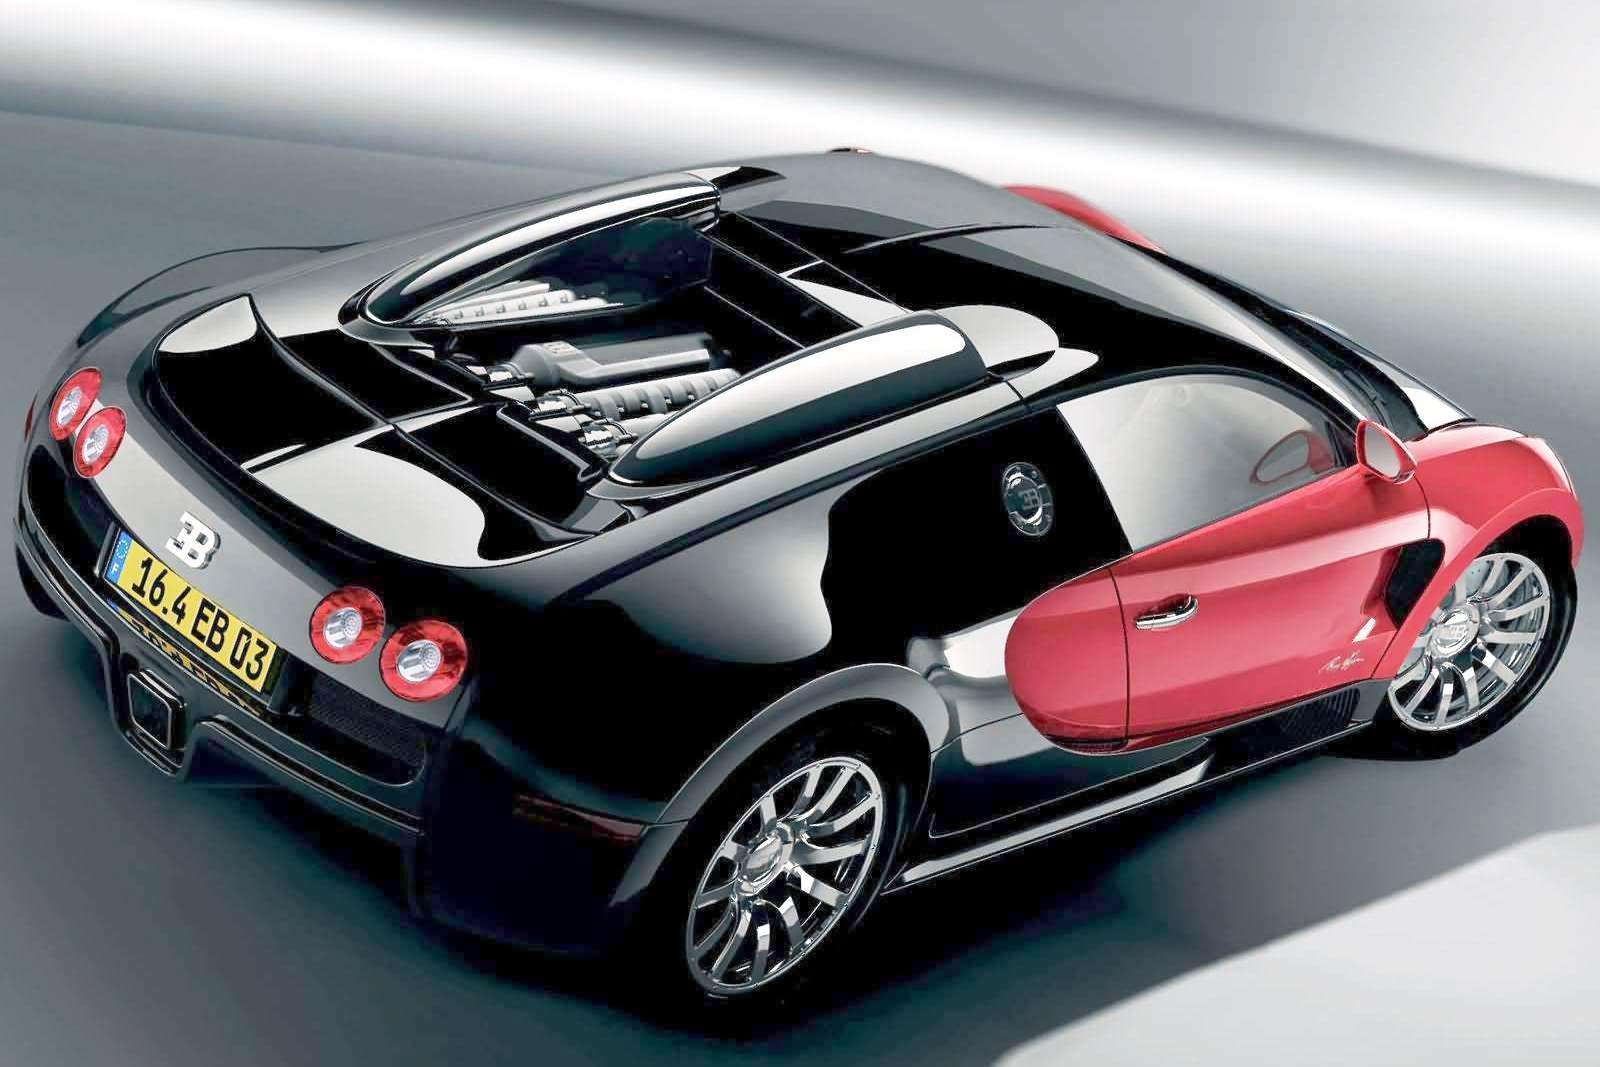 Bugatti EB 16.4 Veyron Wallpaper Picture, Image